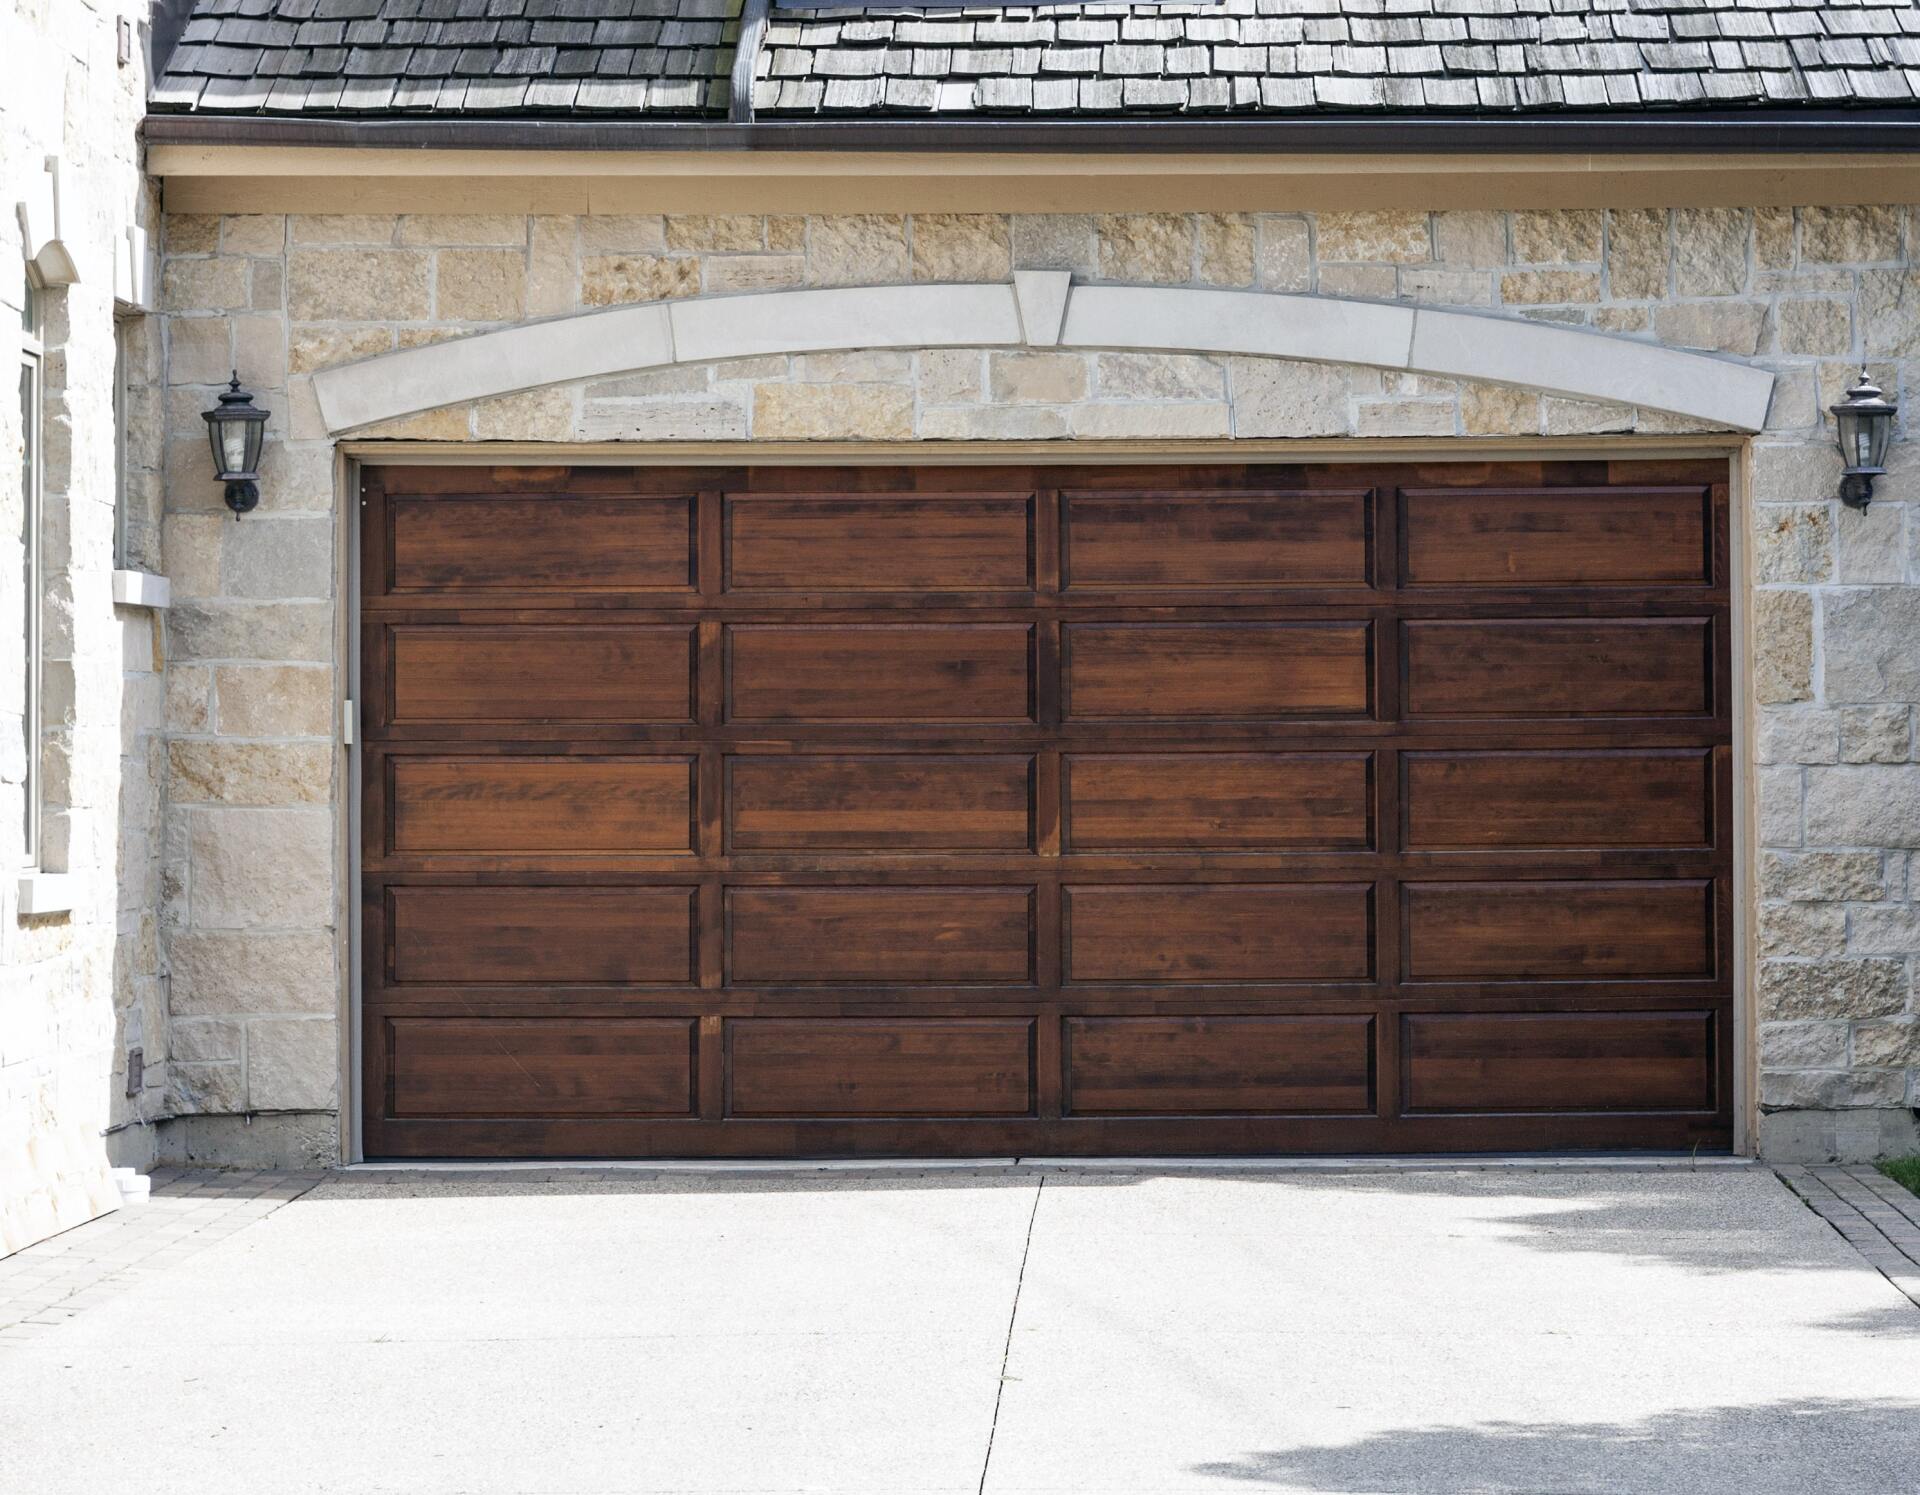 Wood garage doors vs steel garage doors: Which is best? - WooD+garage+Doors+vs+steel+garage+Doors+Which+is+best 1920w